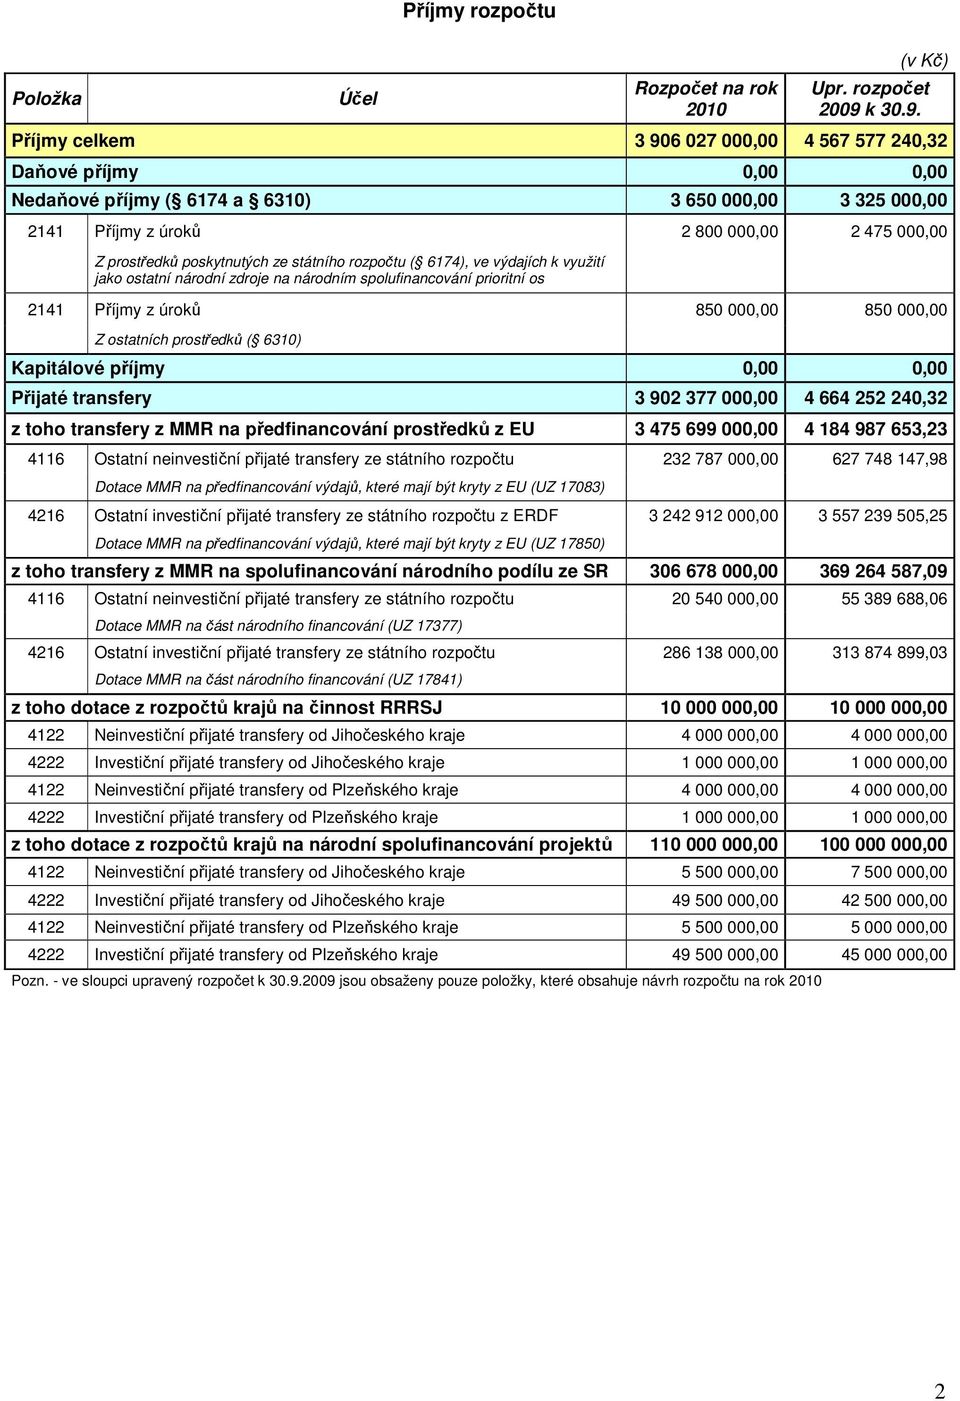 poskytnutých ze státního rozpočtu ( 6174), ve výdajích k využití jako ostatní národní zdroje na národním spolufinancování prioritní os 2141 Příjmy z úroků 850 000,00 850 000,00 Z ostatních prostředků